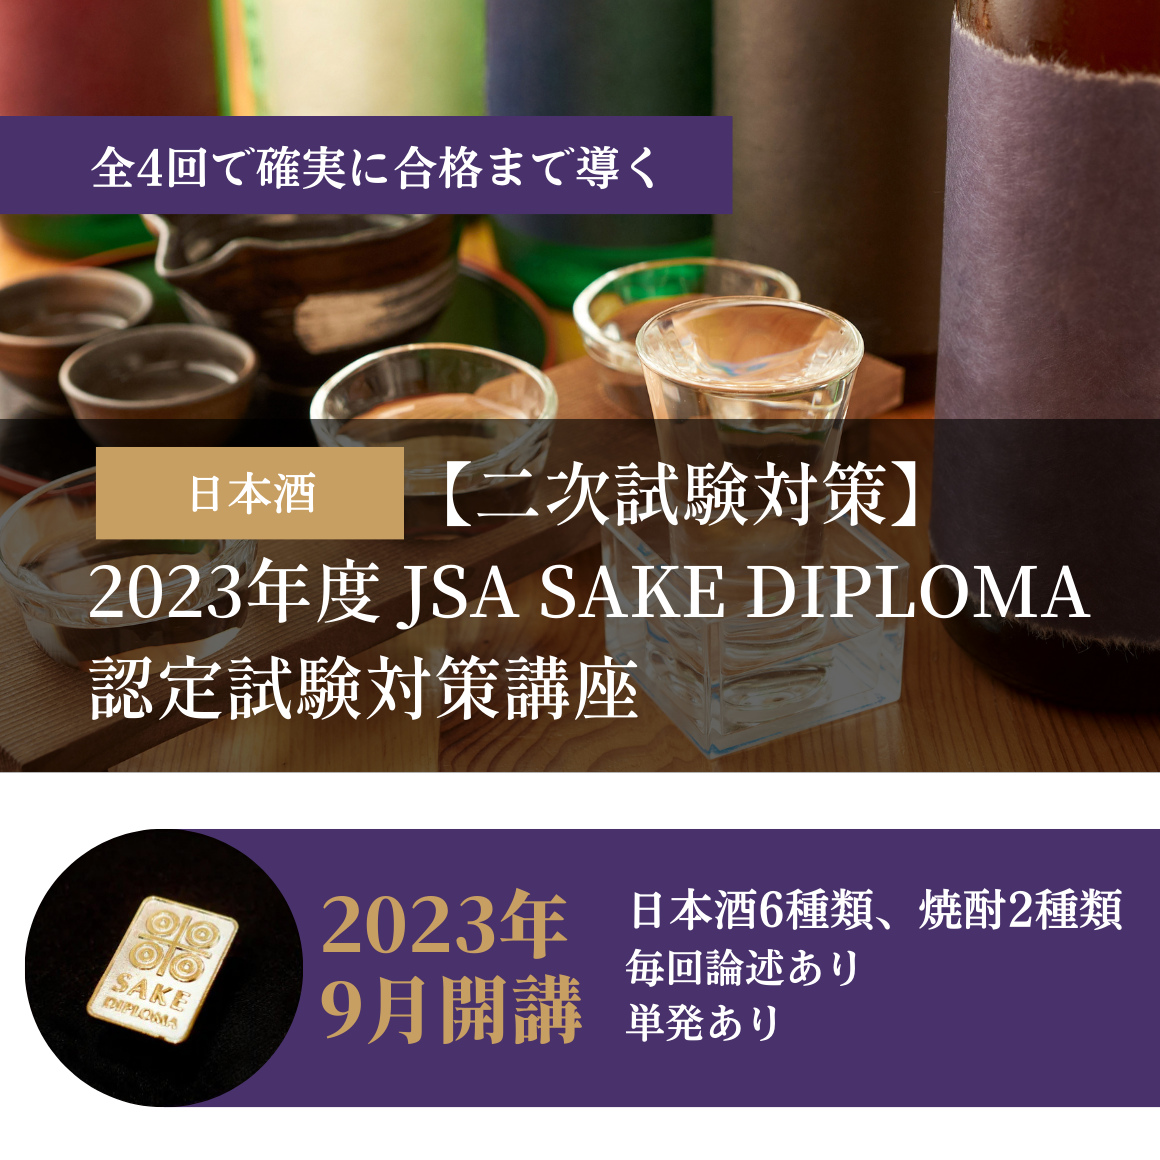 【二次試験対策】2023年度 JSA SAKE DIPLOMA認定試験対策講座